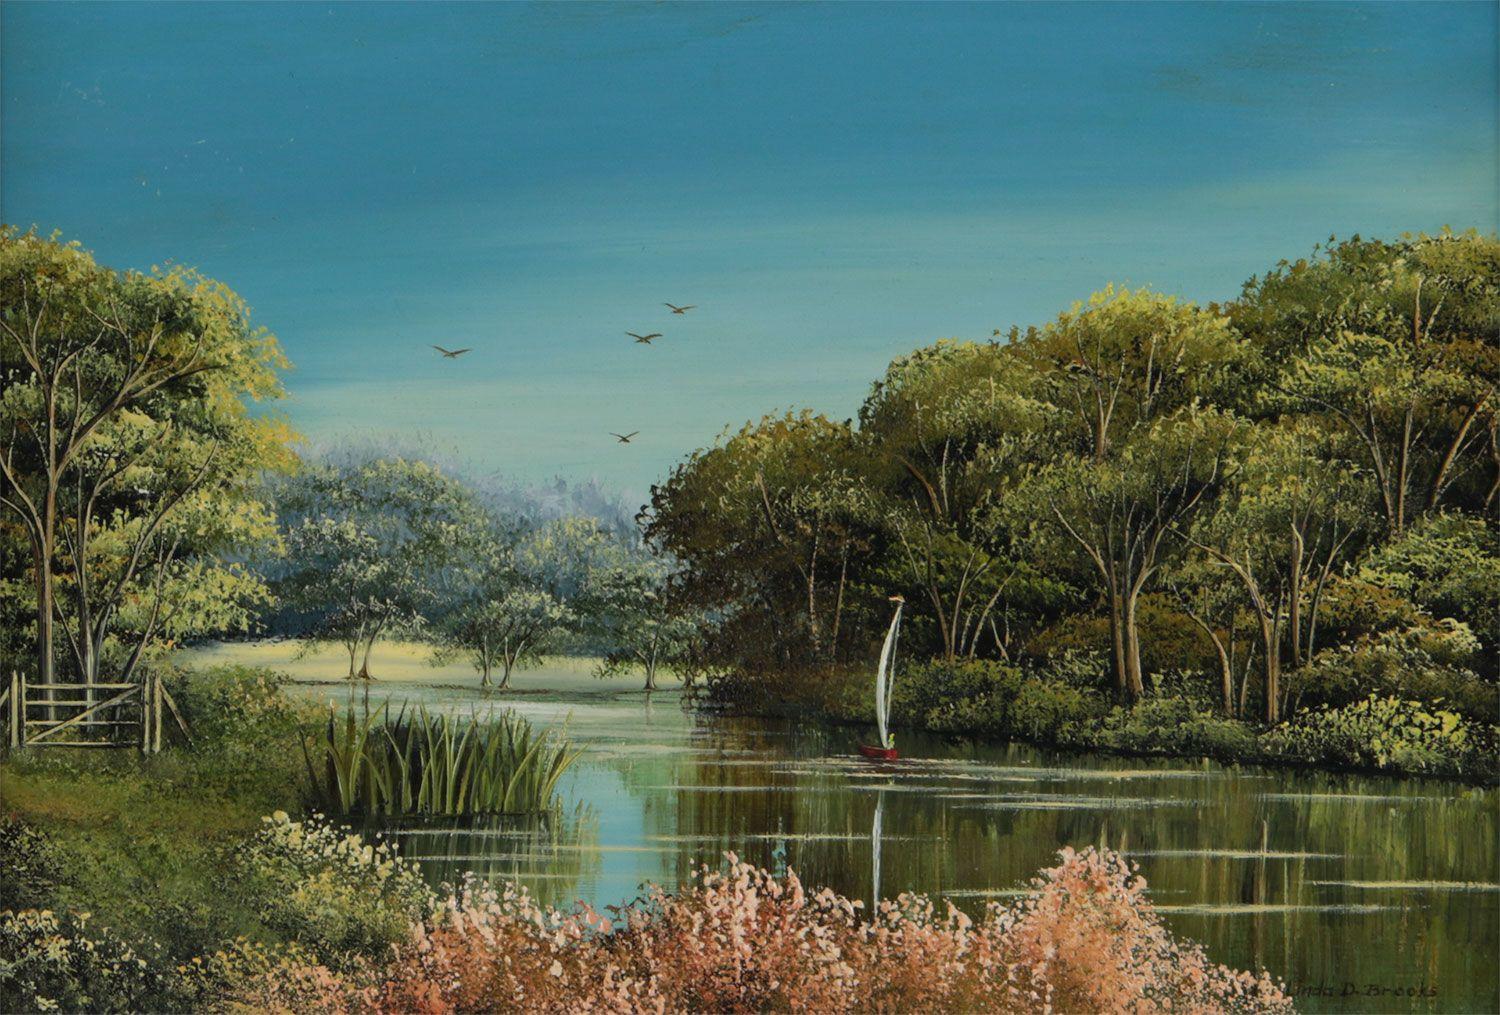 Miniatur-Ölgemälde einer englischen Flussszene des 20. Jahrhunderts von der britischen Künstlerin Linda D Brooks 

Kunst misst 10 x 7 Zoll 
Rahmen misst 15 x 12 Zoll 

Eine wunderschön detaillierte Darstellung einer idyllischen Flussuferszene in der